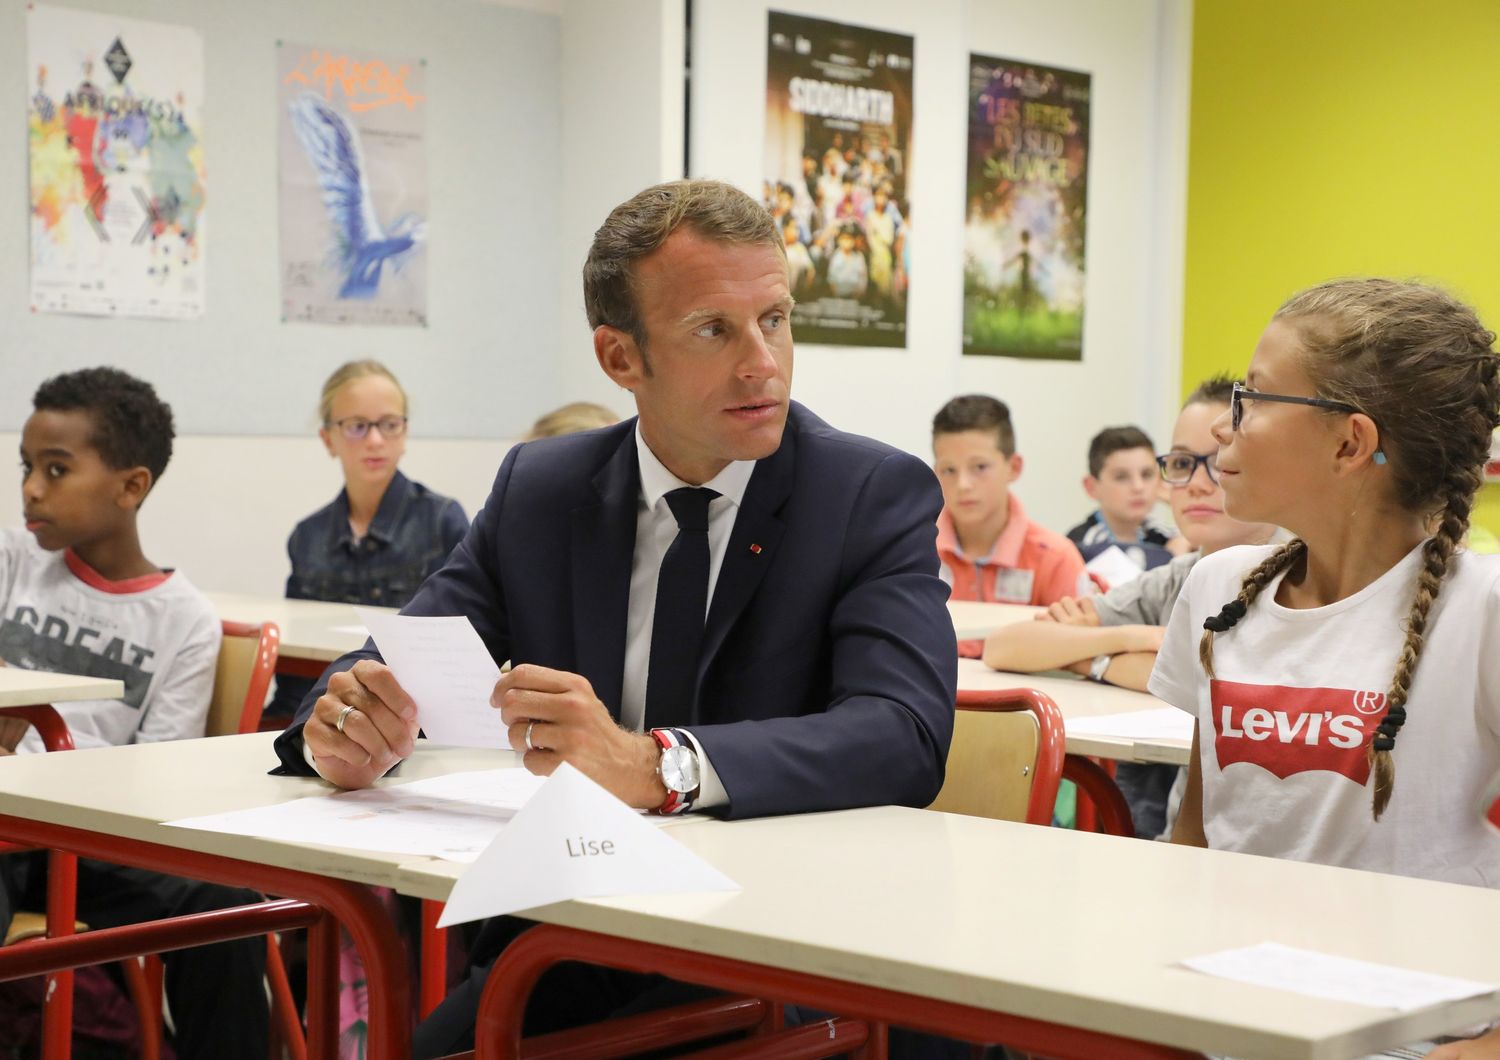 Il presidente Macron in visita ad una scuola di Parigi&nbsp;